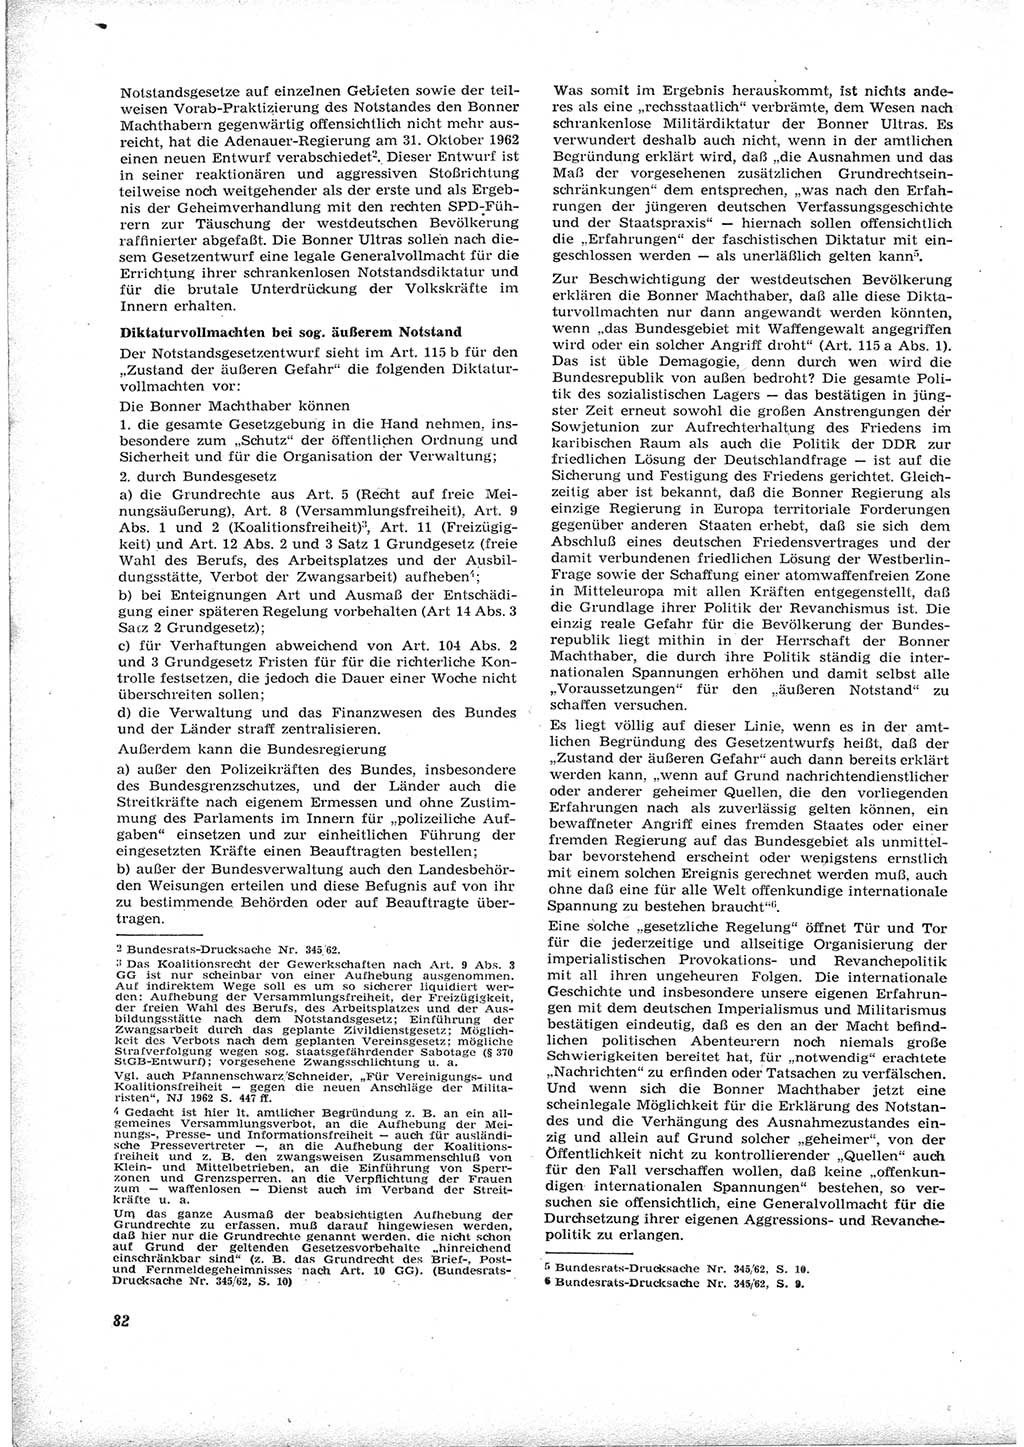 Neue Justiz (NJ), Zeitschrift für Recht und Rechtswissenschaft [Deutsche Demokratische Republik (DDR)], 17. Jahrgang 1963, Seite 82 (NJ DDR 1963, S. 82)